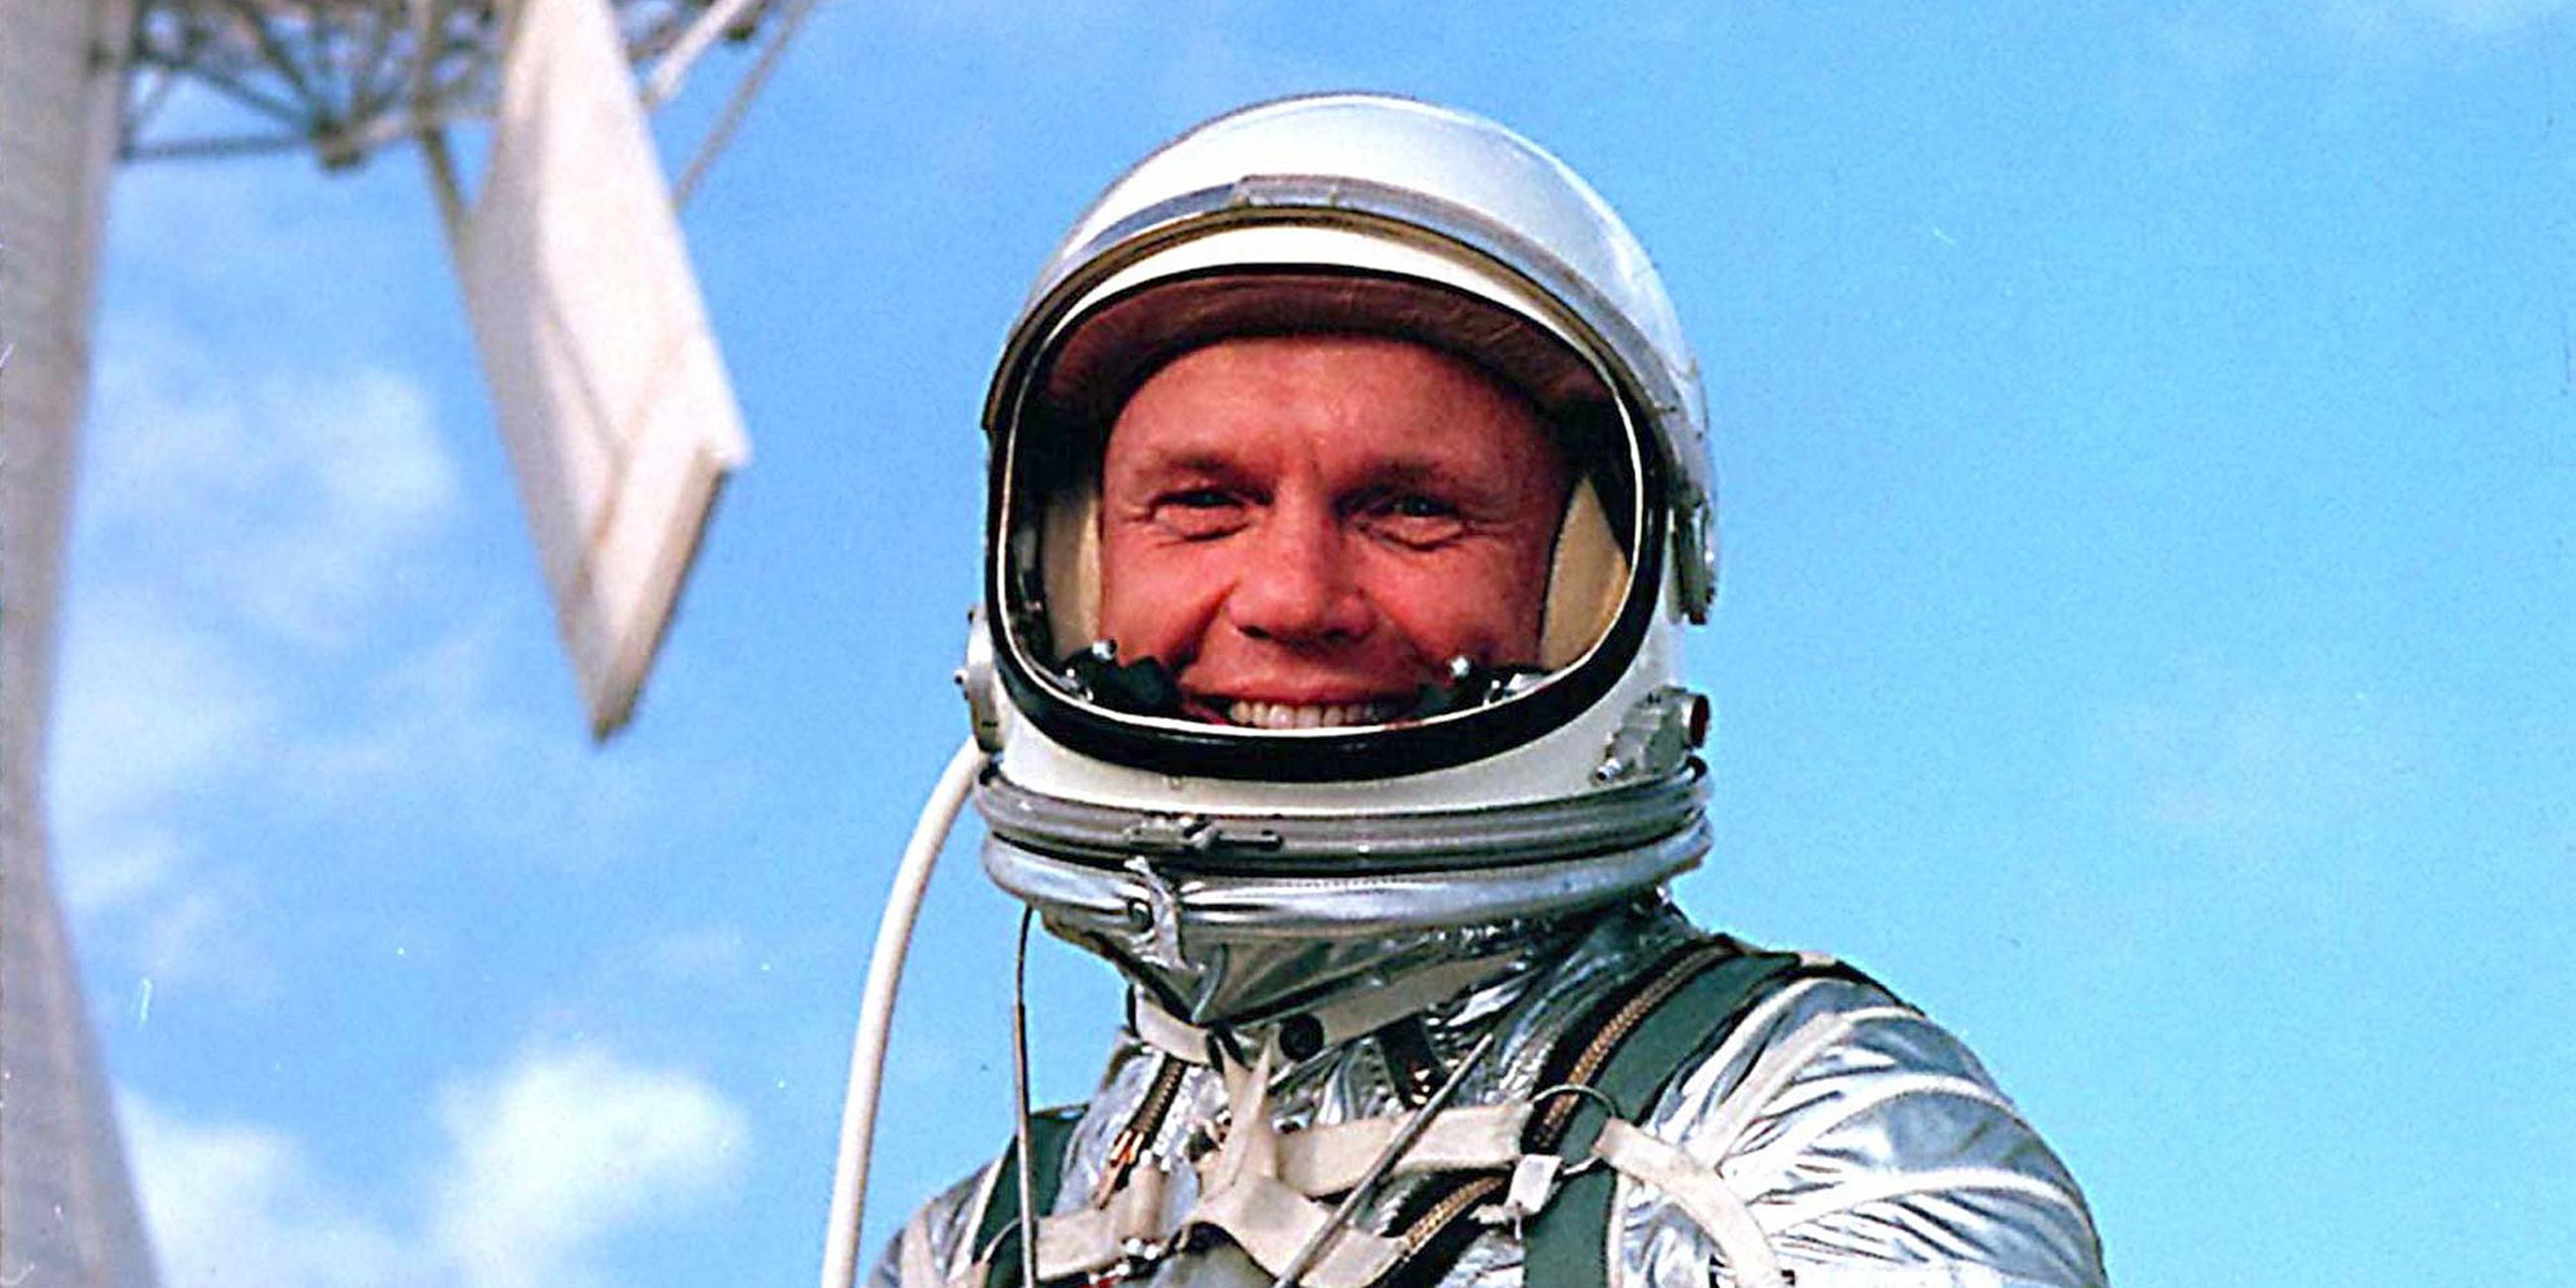 Februar 1962: John Glenn umrundet als erster US-Astronaut die Erde